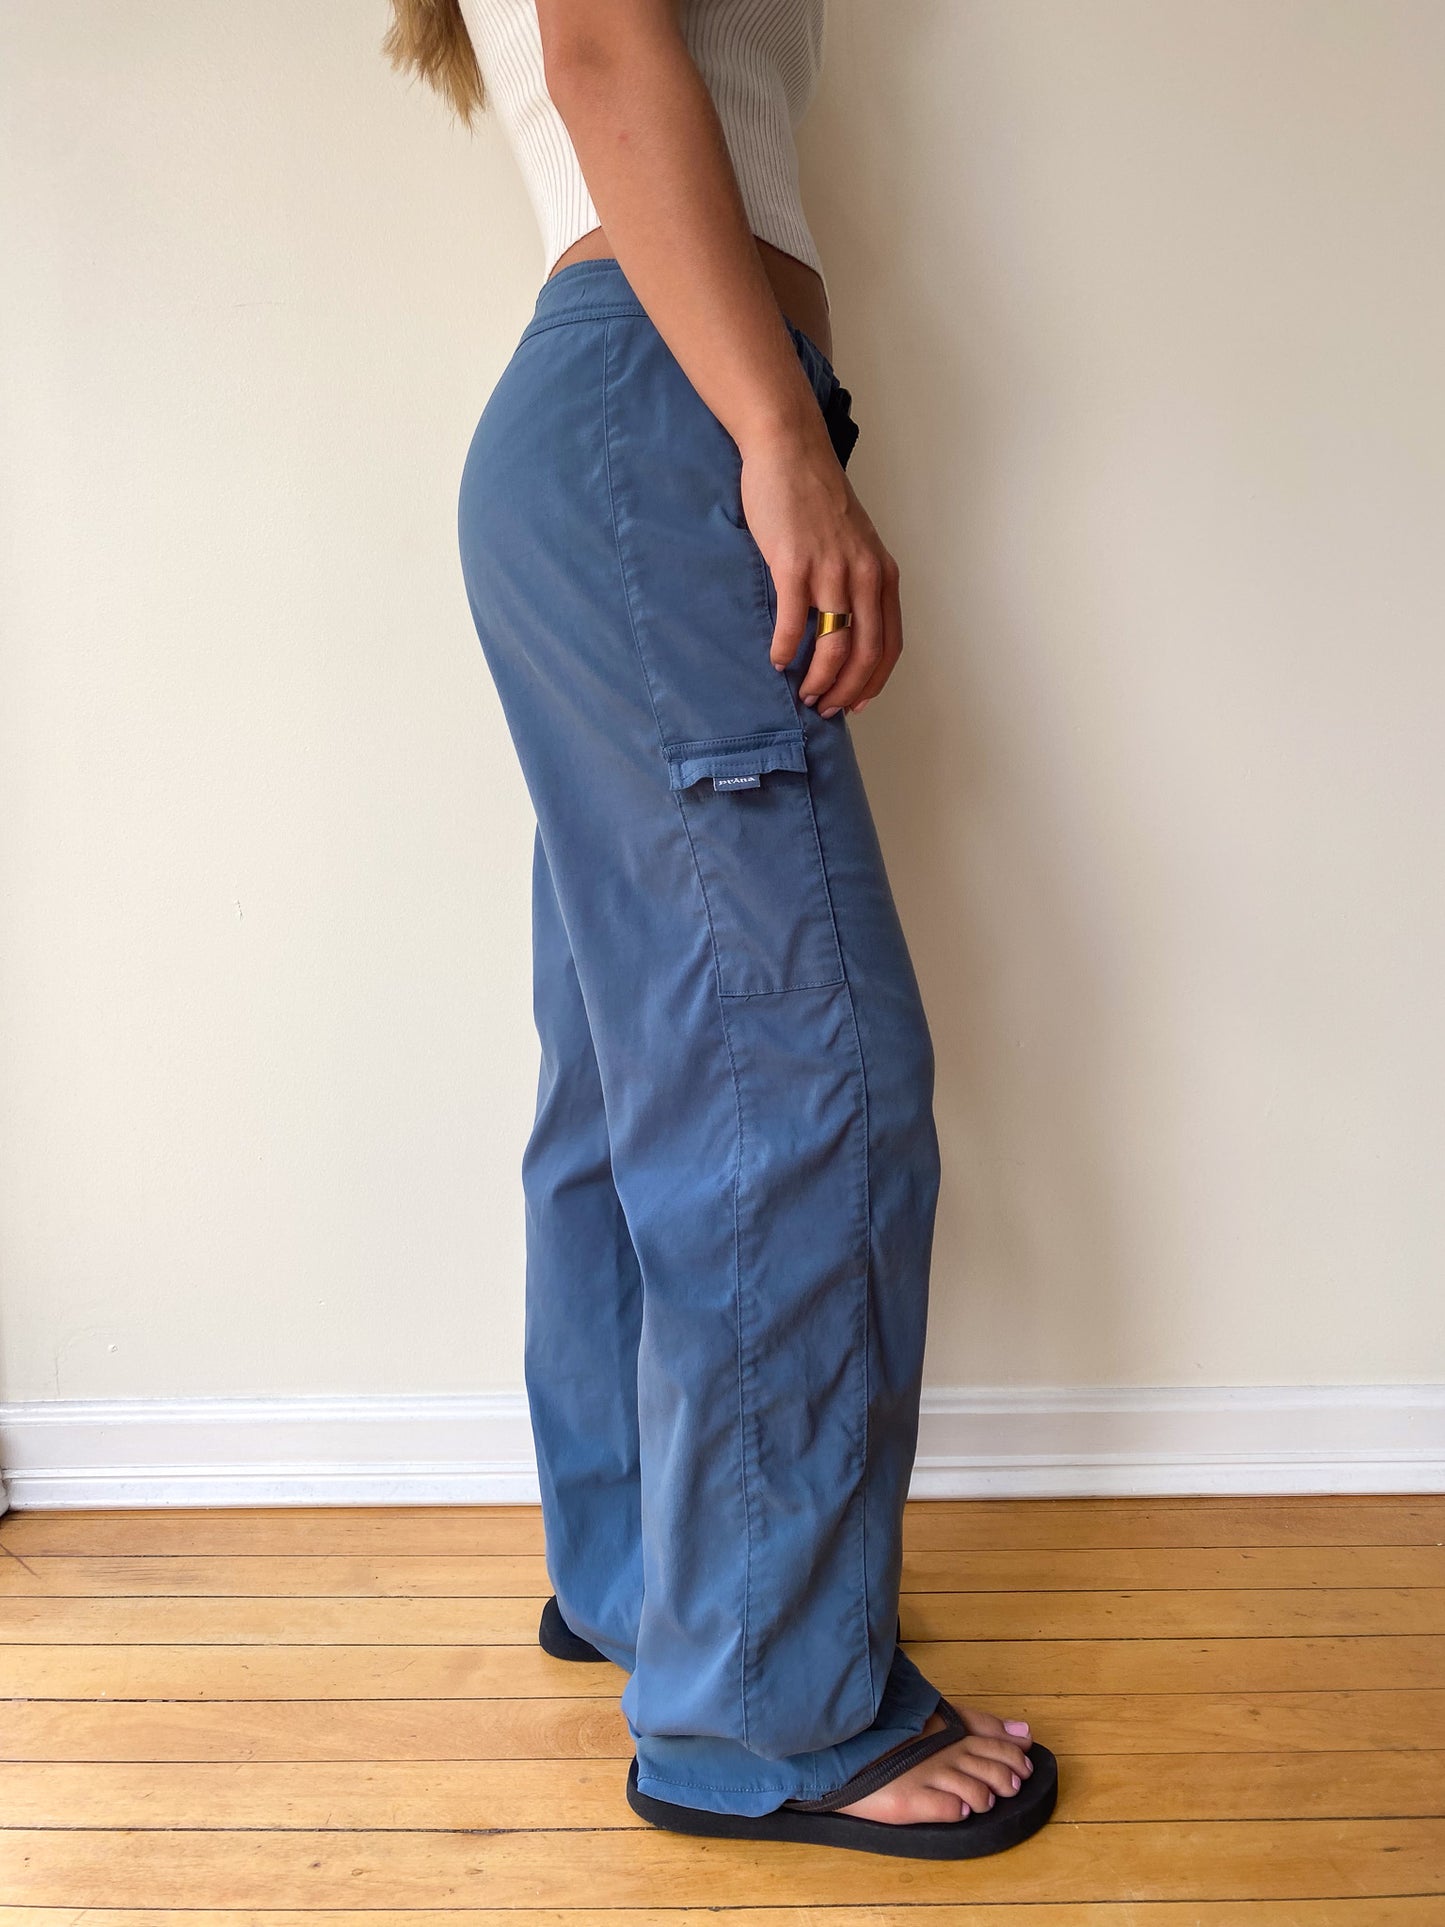 Prana leggings navy blue Size medium Shipping - Depop